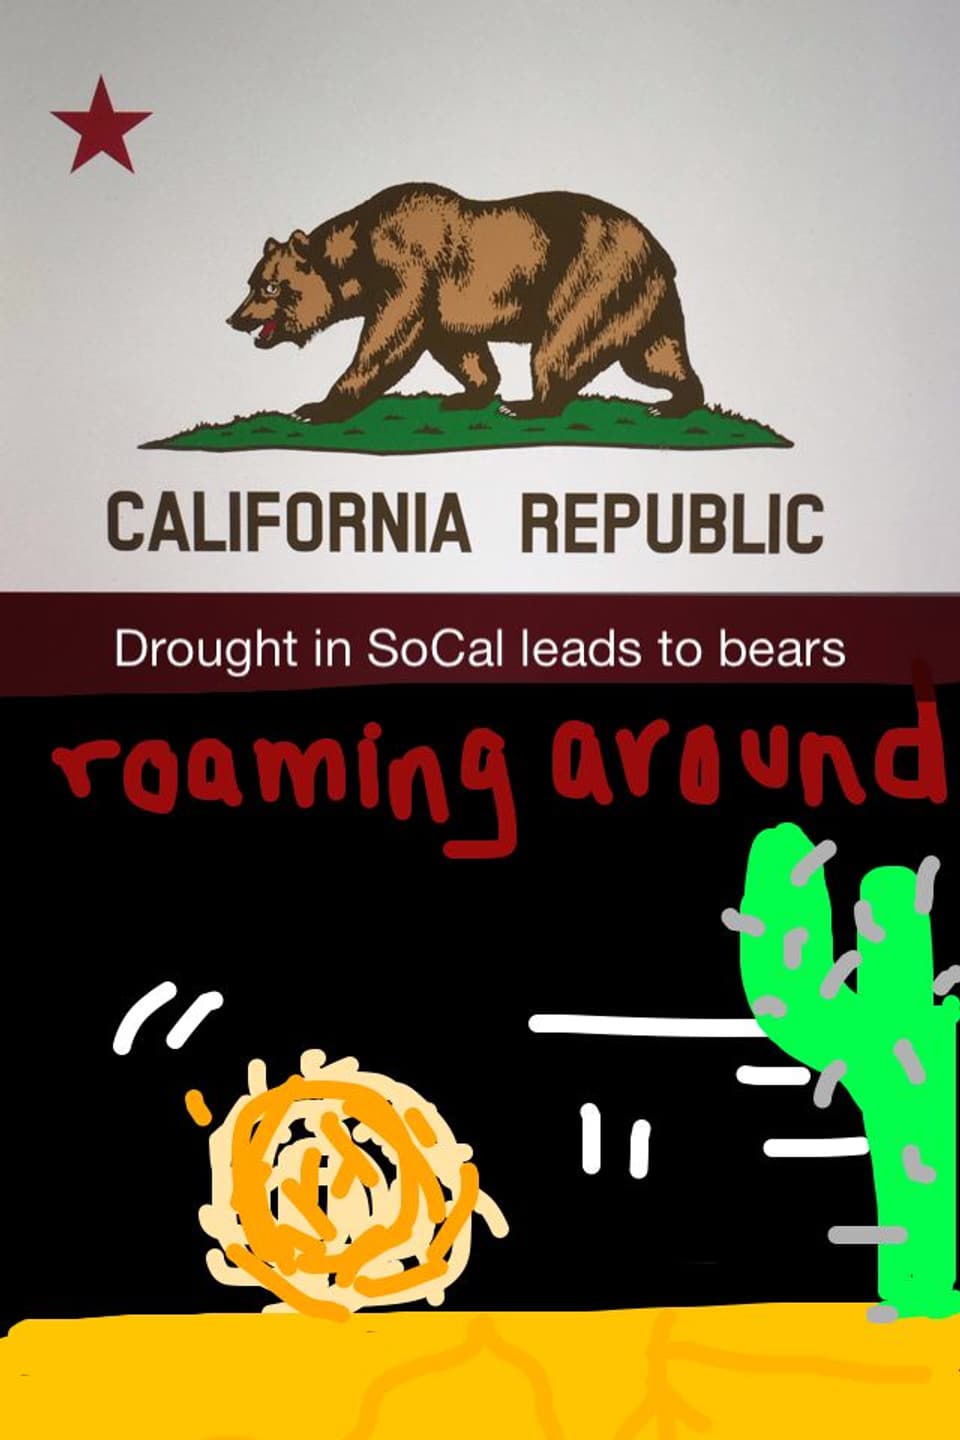 Flagge von Kalifornien und selbstgemaltes Bild